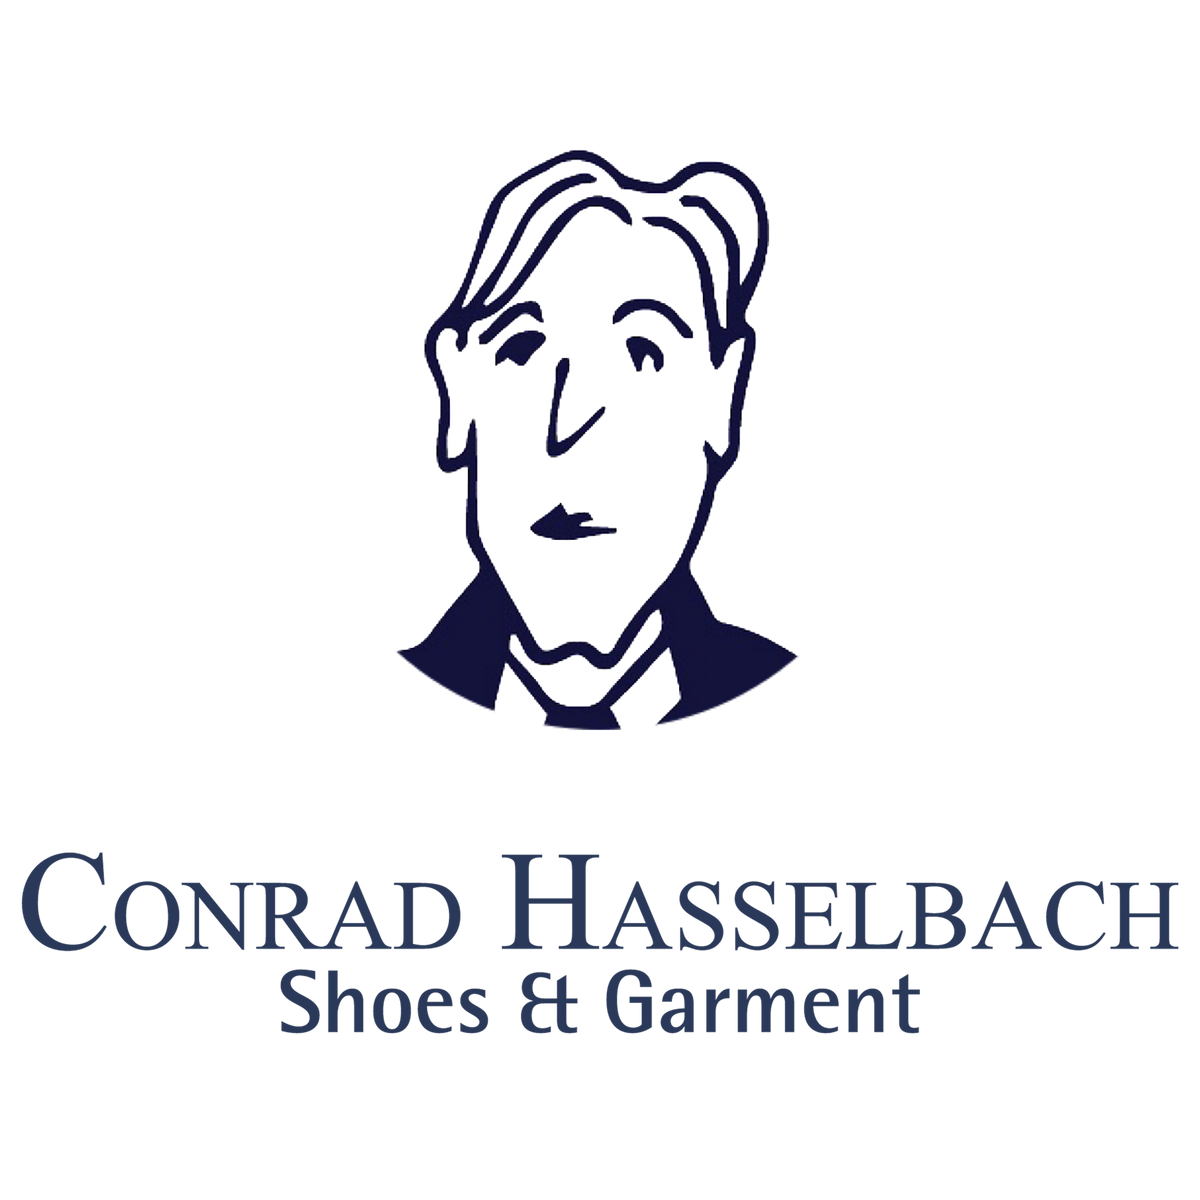 (c) Conradhasselbach.de